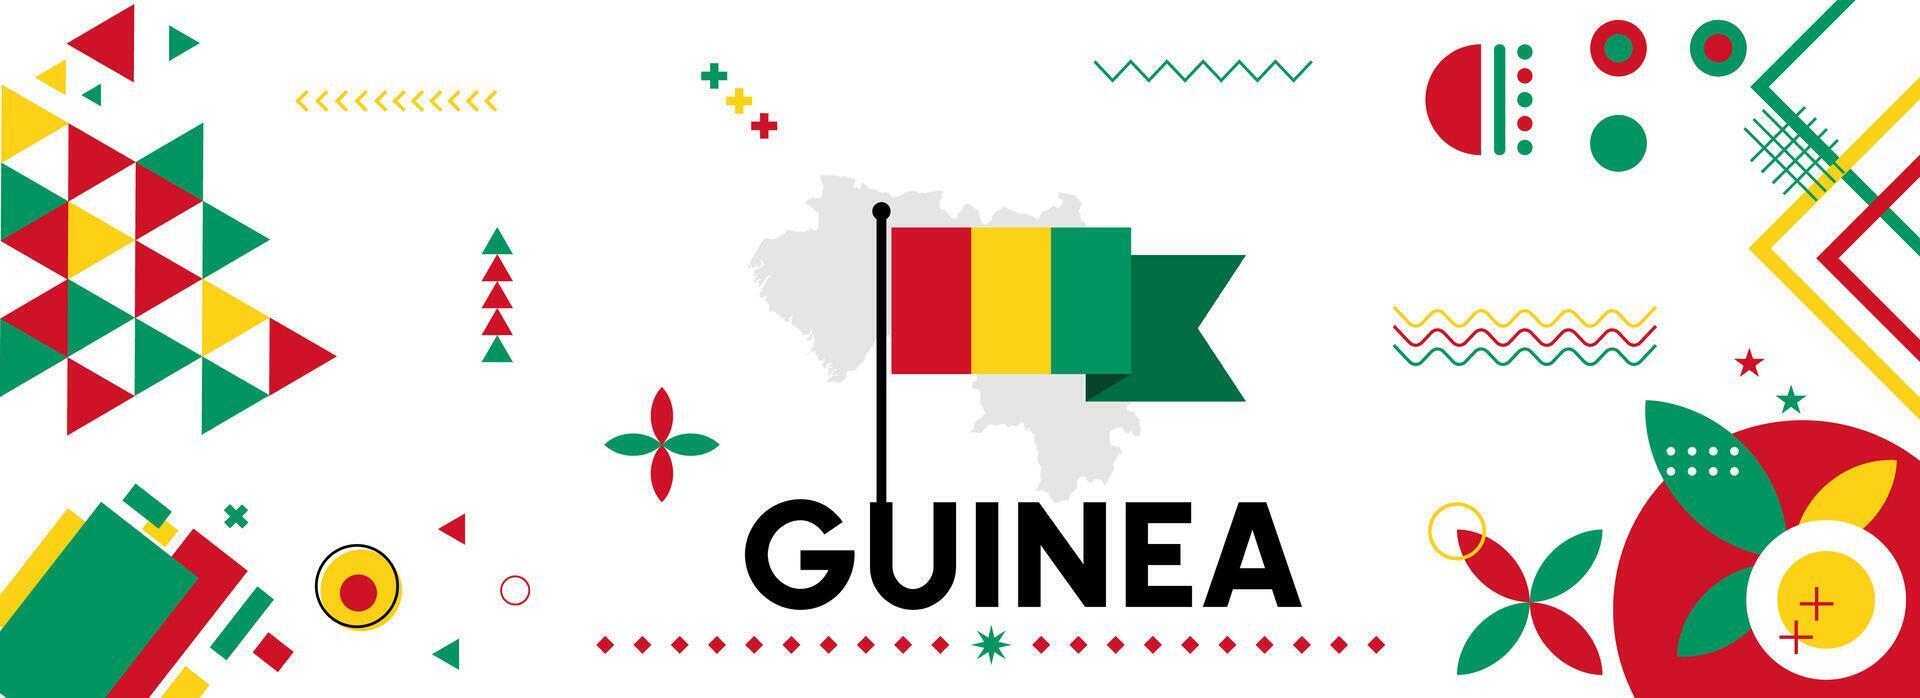 Guinea National oder Unabhängigkeit Tag Banner zum Land Feier. Flagge und Karte von Guinea mit angehoben Fäuste. modern retro Design mit Typorgaphie abstrakt geometrisch Symbole. Vektor Illustration.